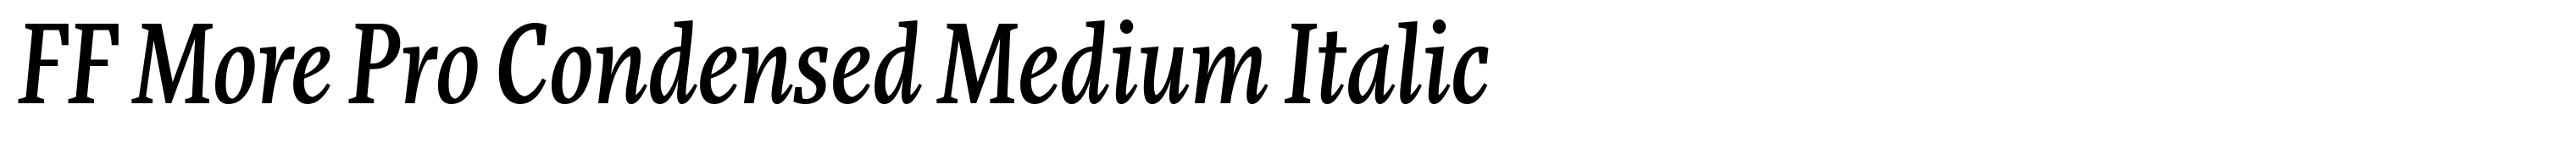 FF More Pro Condensed Medium Italic